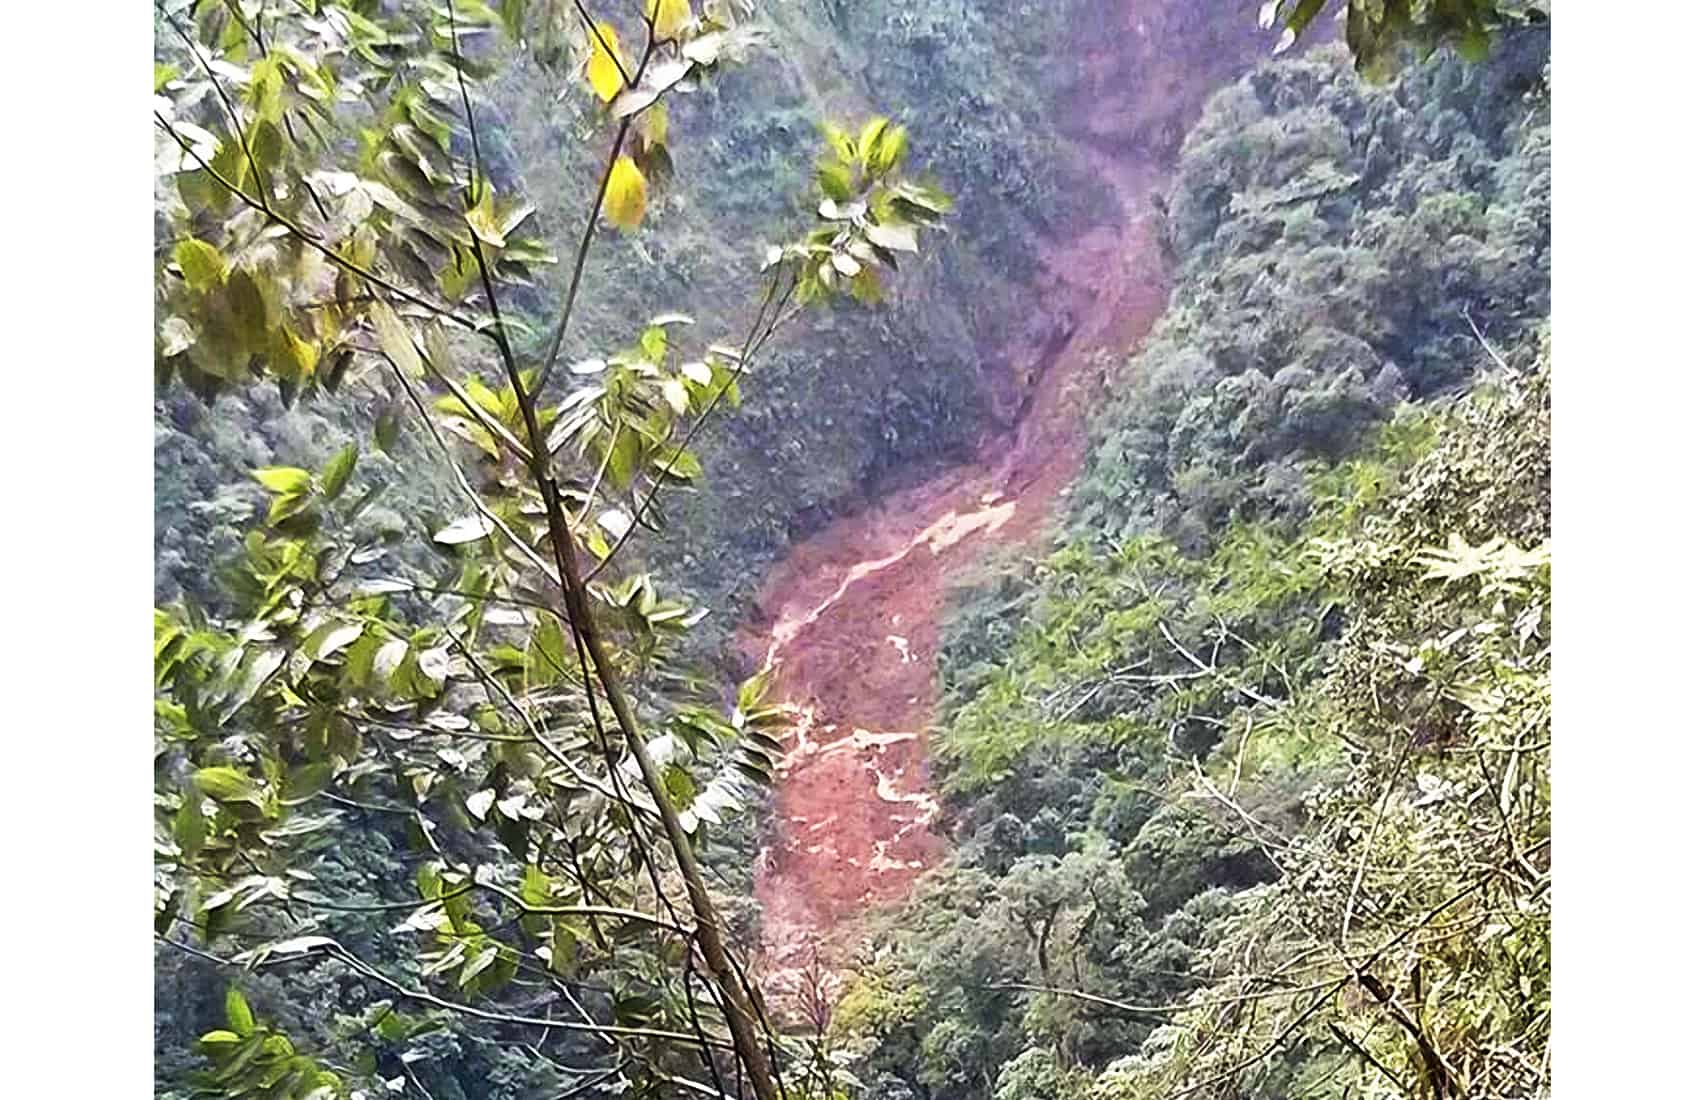 Mudslide at Sarapiquí